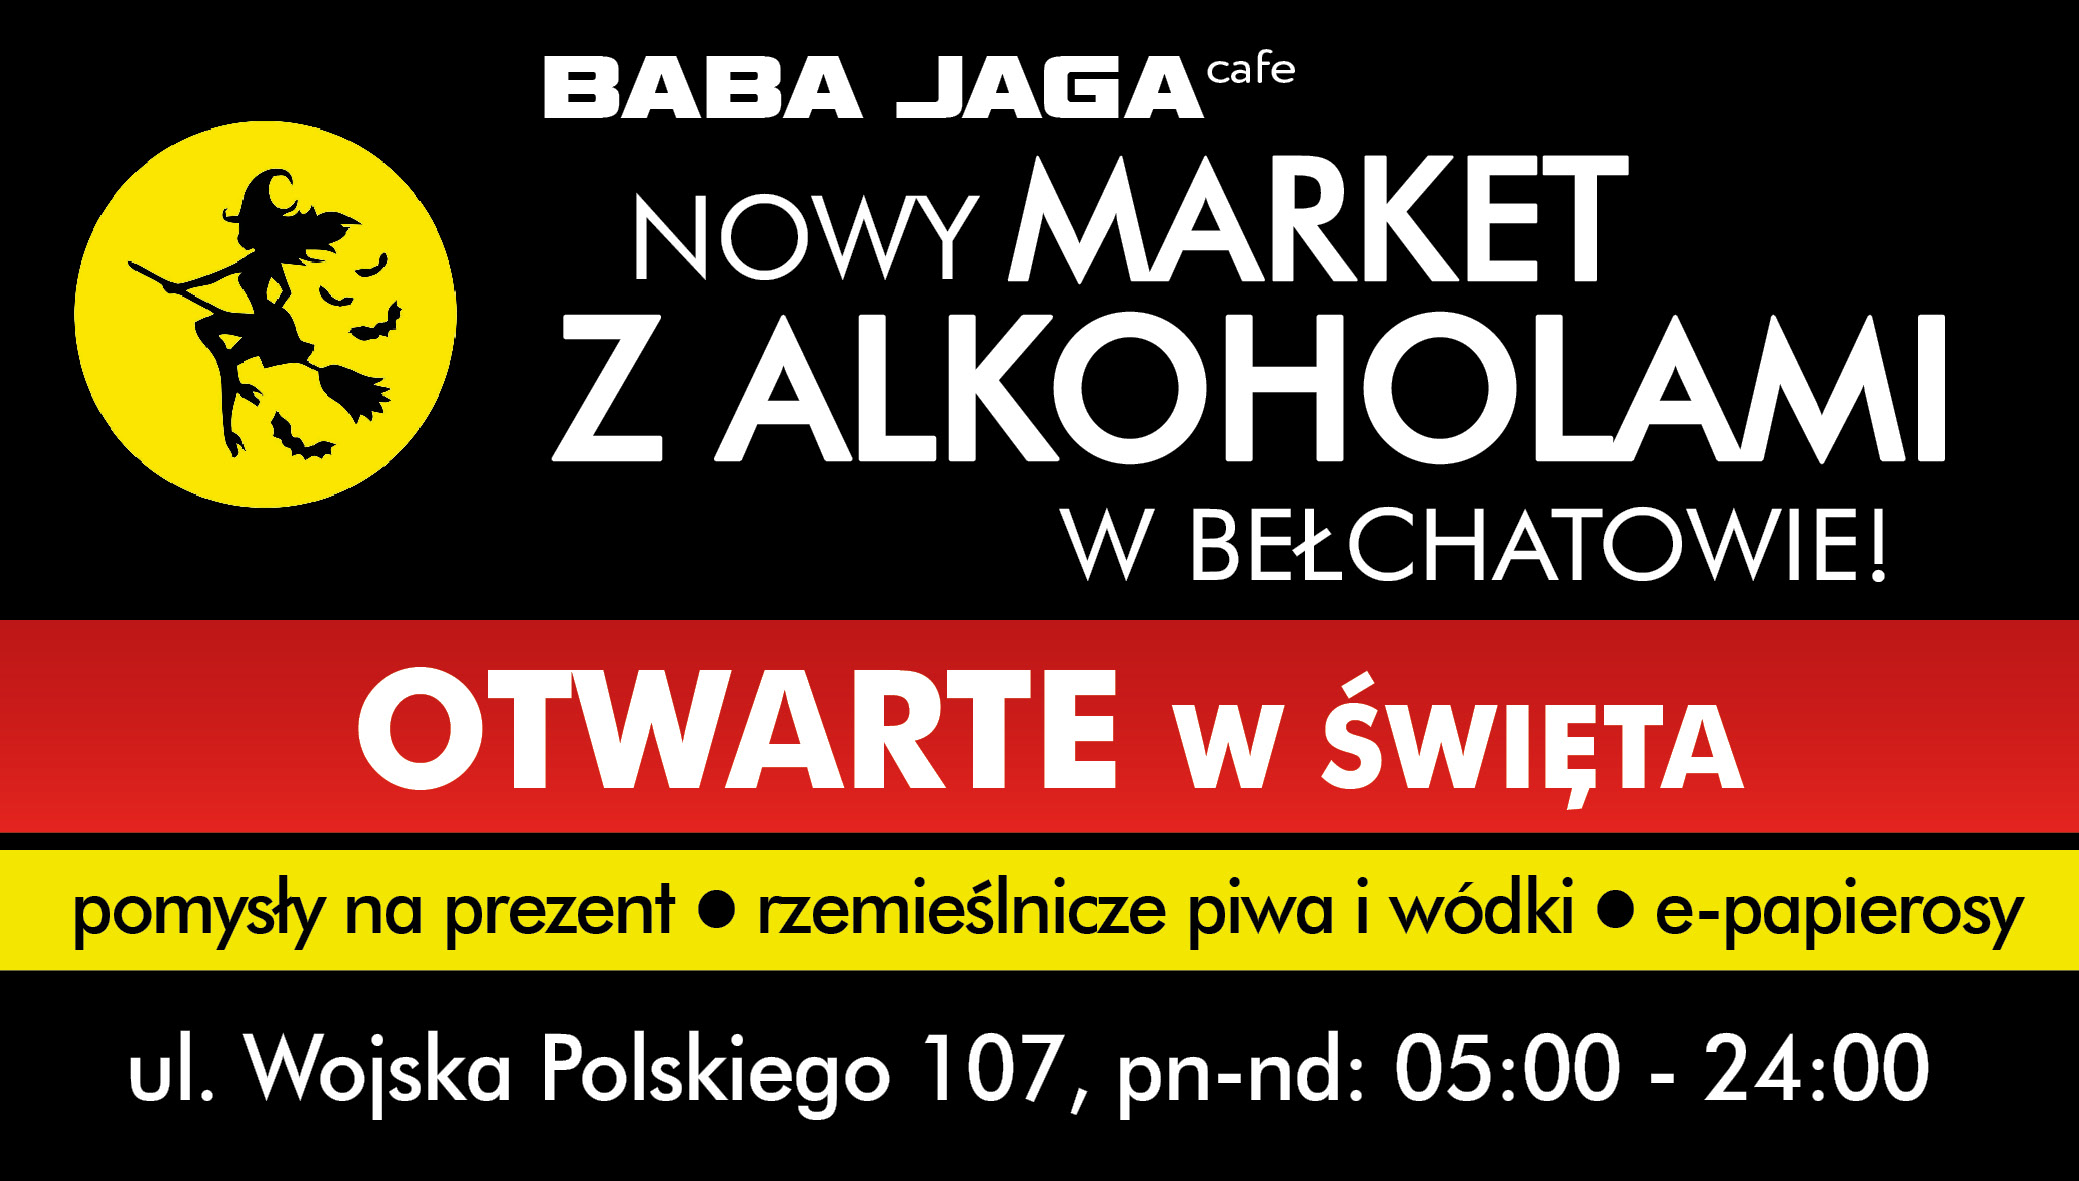 Nowo otwarty market alkoholowy w Bełchatowie! Zapraszamy przy ul. Wojska Polskiego 107  - Zdjęcie główne